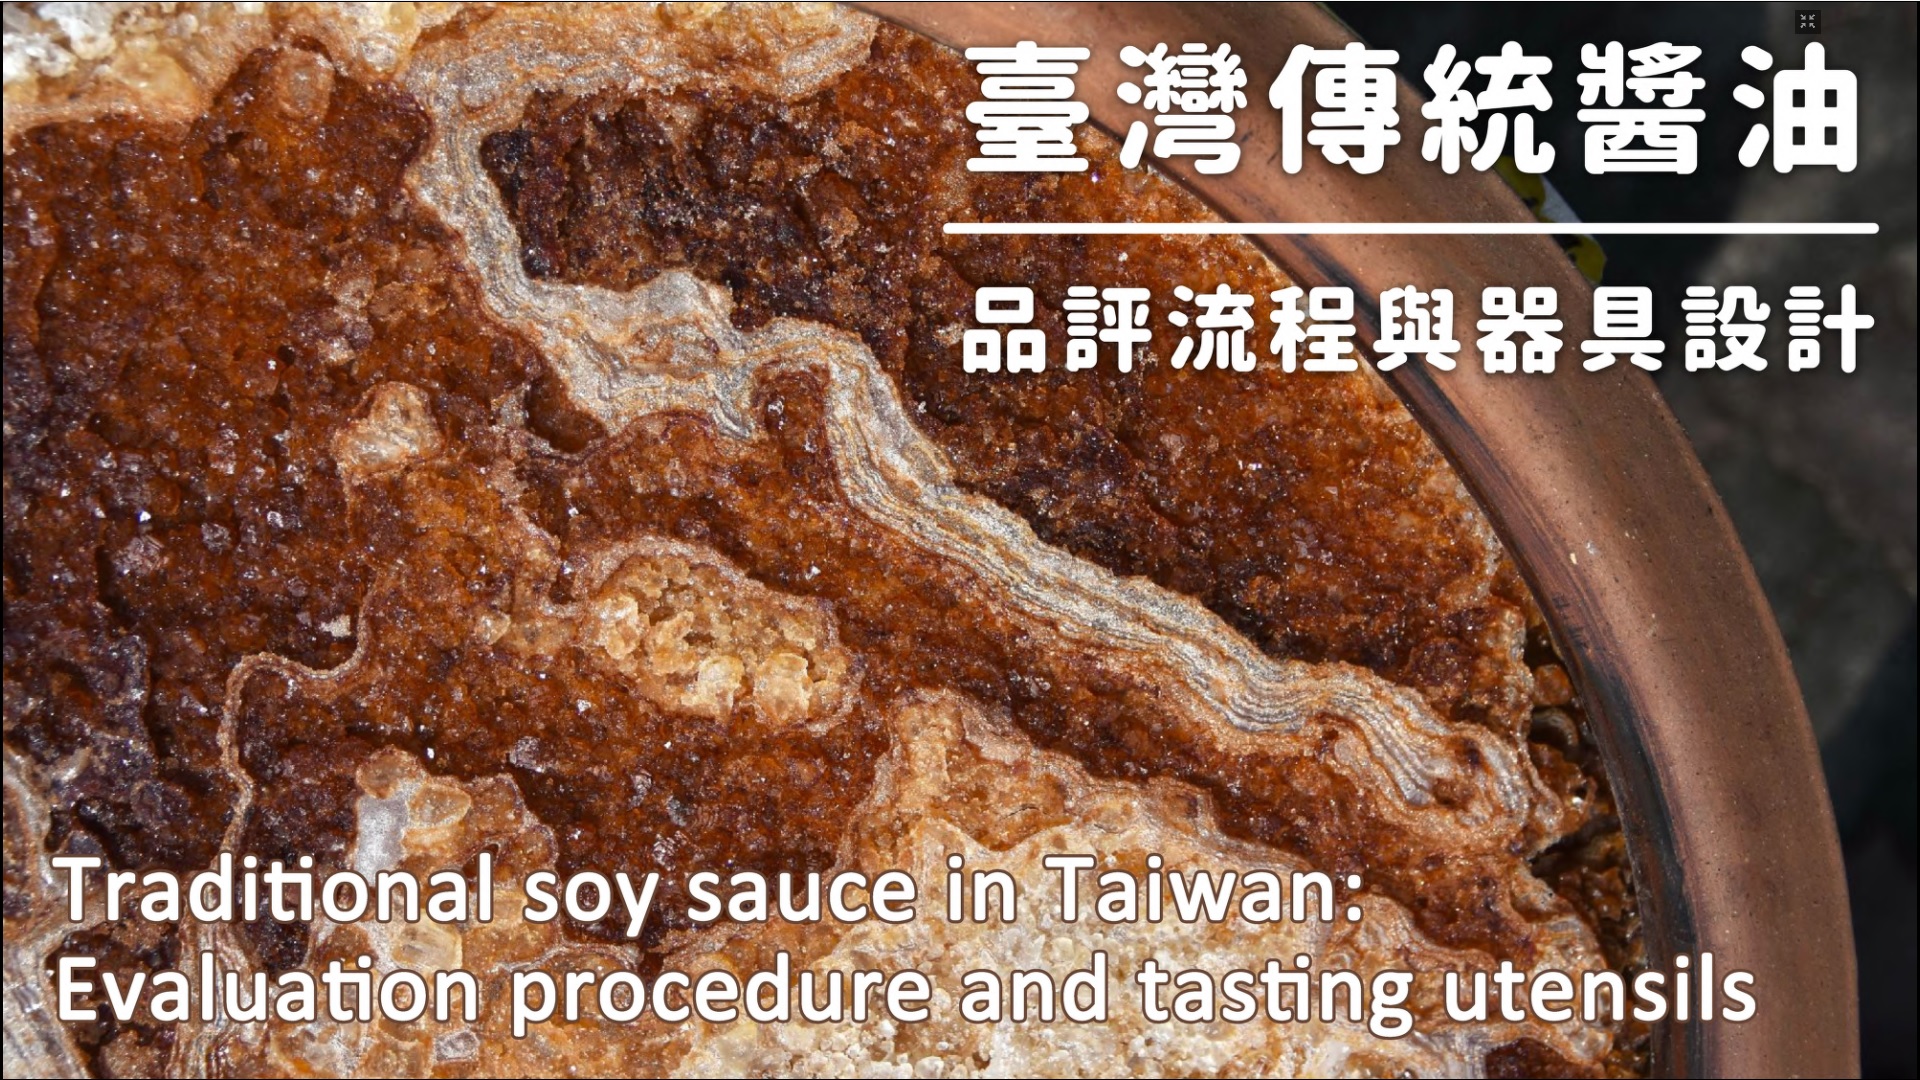 台灣傳統醬油品評與器具設計